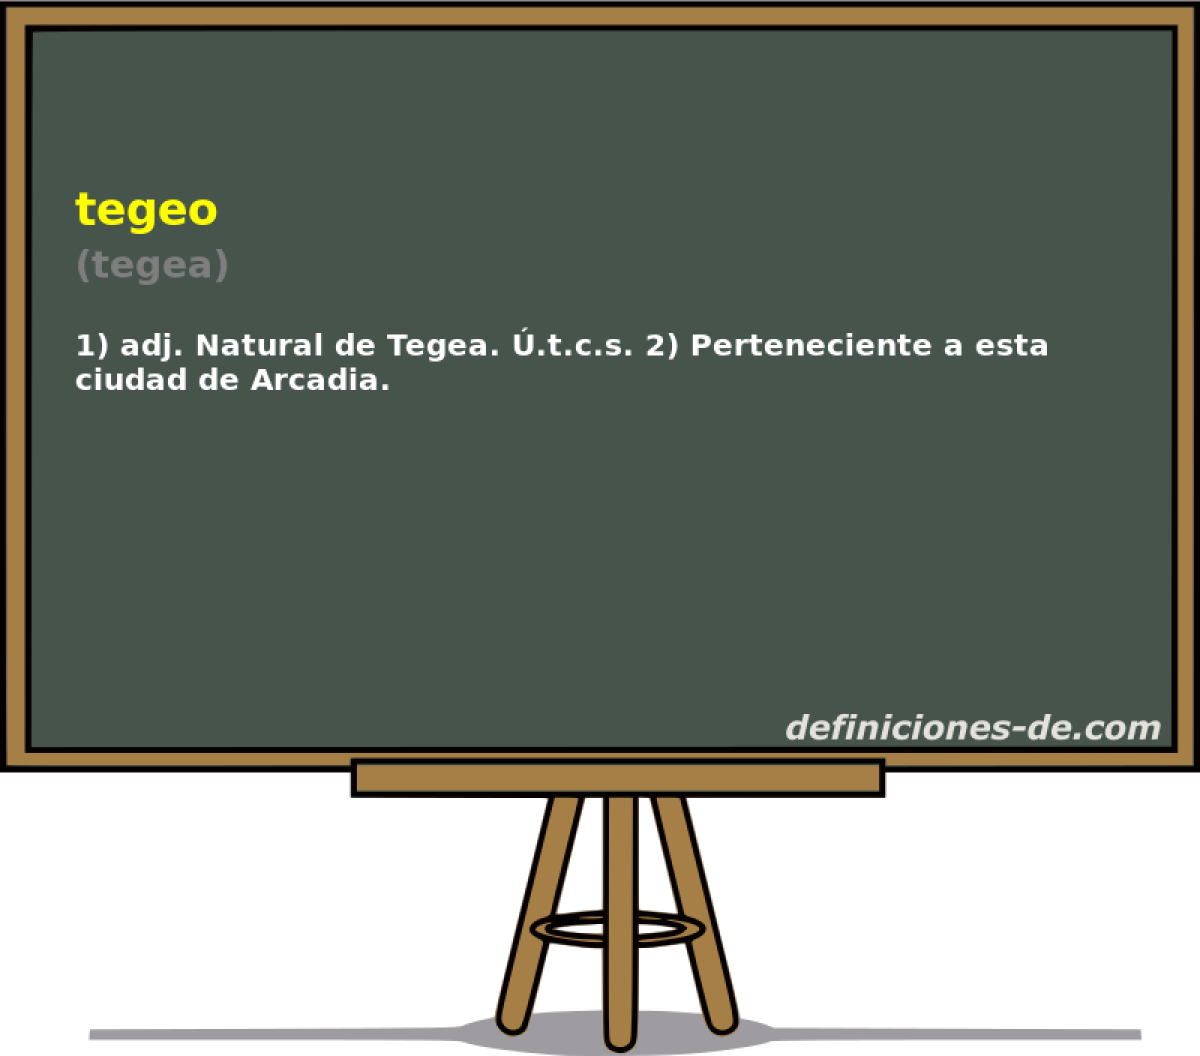 tegeo (tegea)